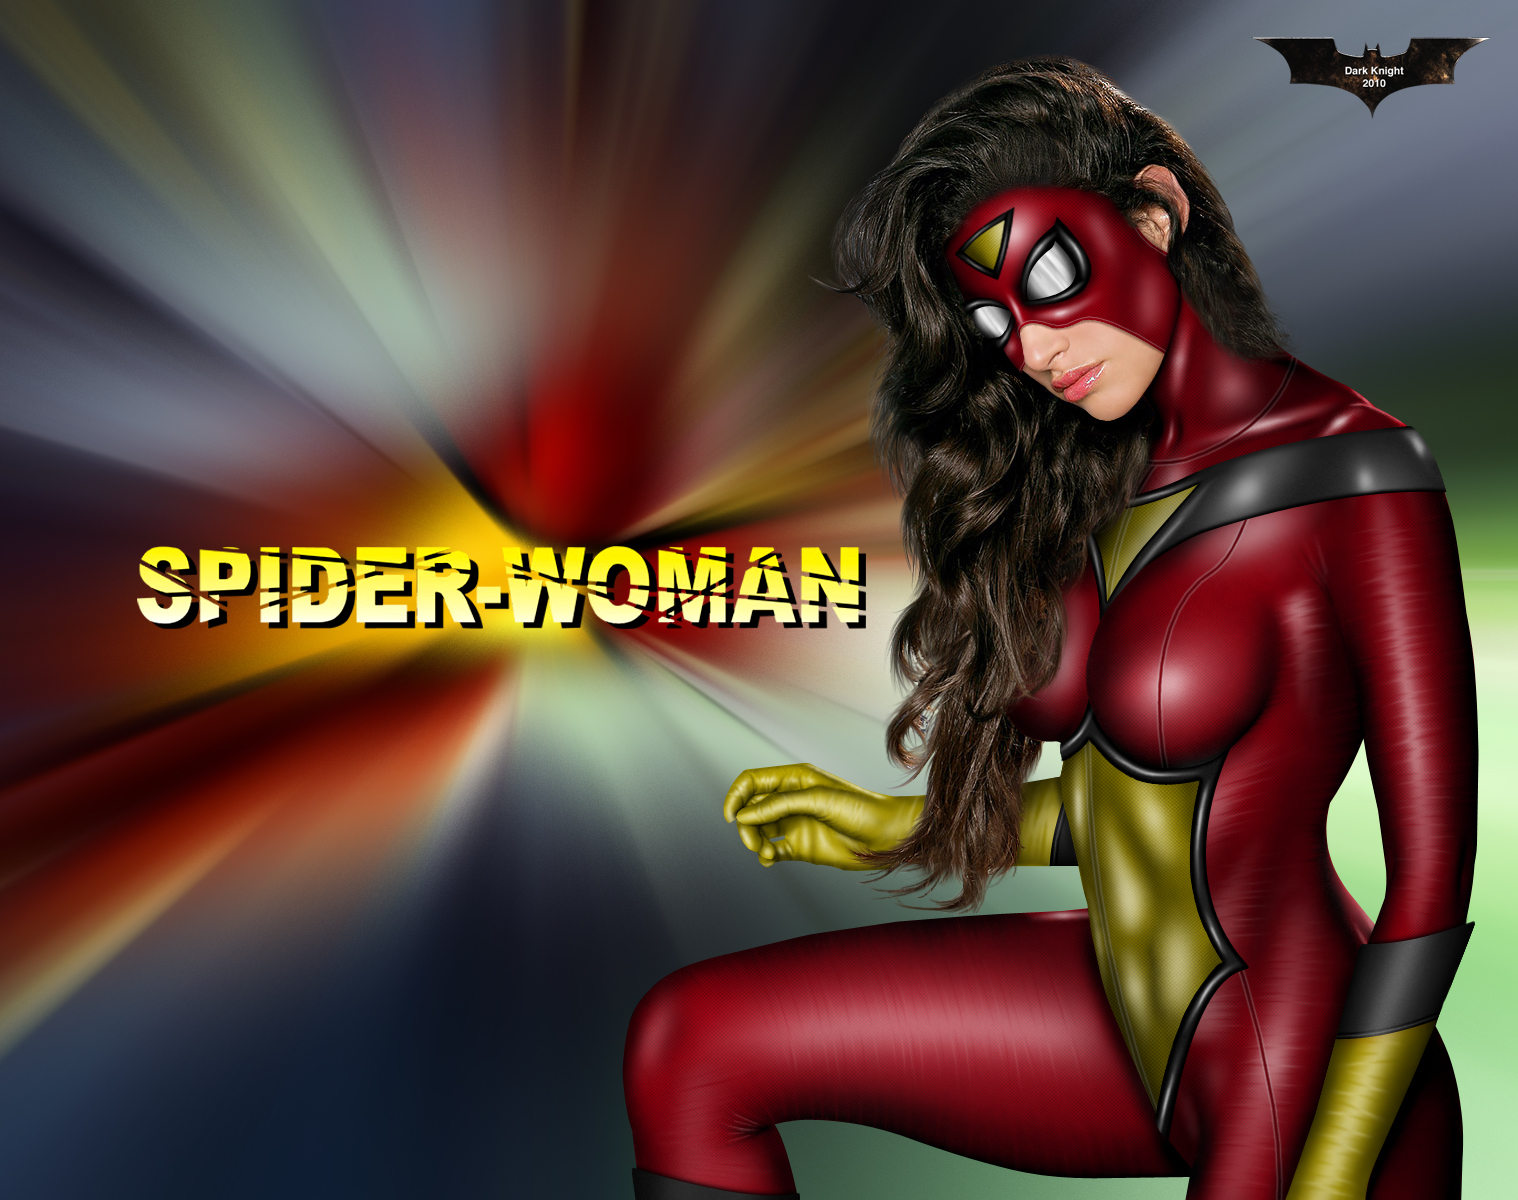 Spider-Woman (2010) by Dark Knight